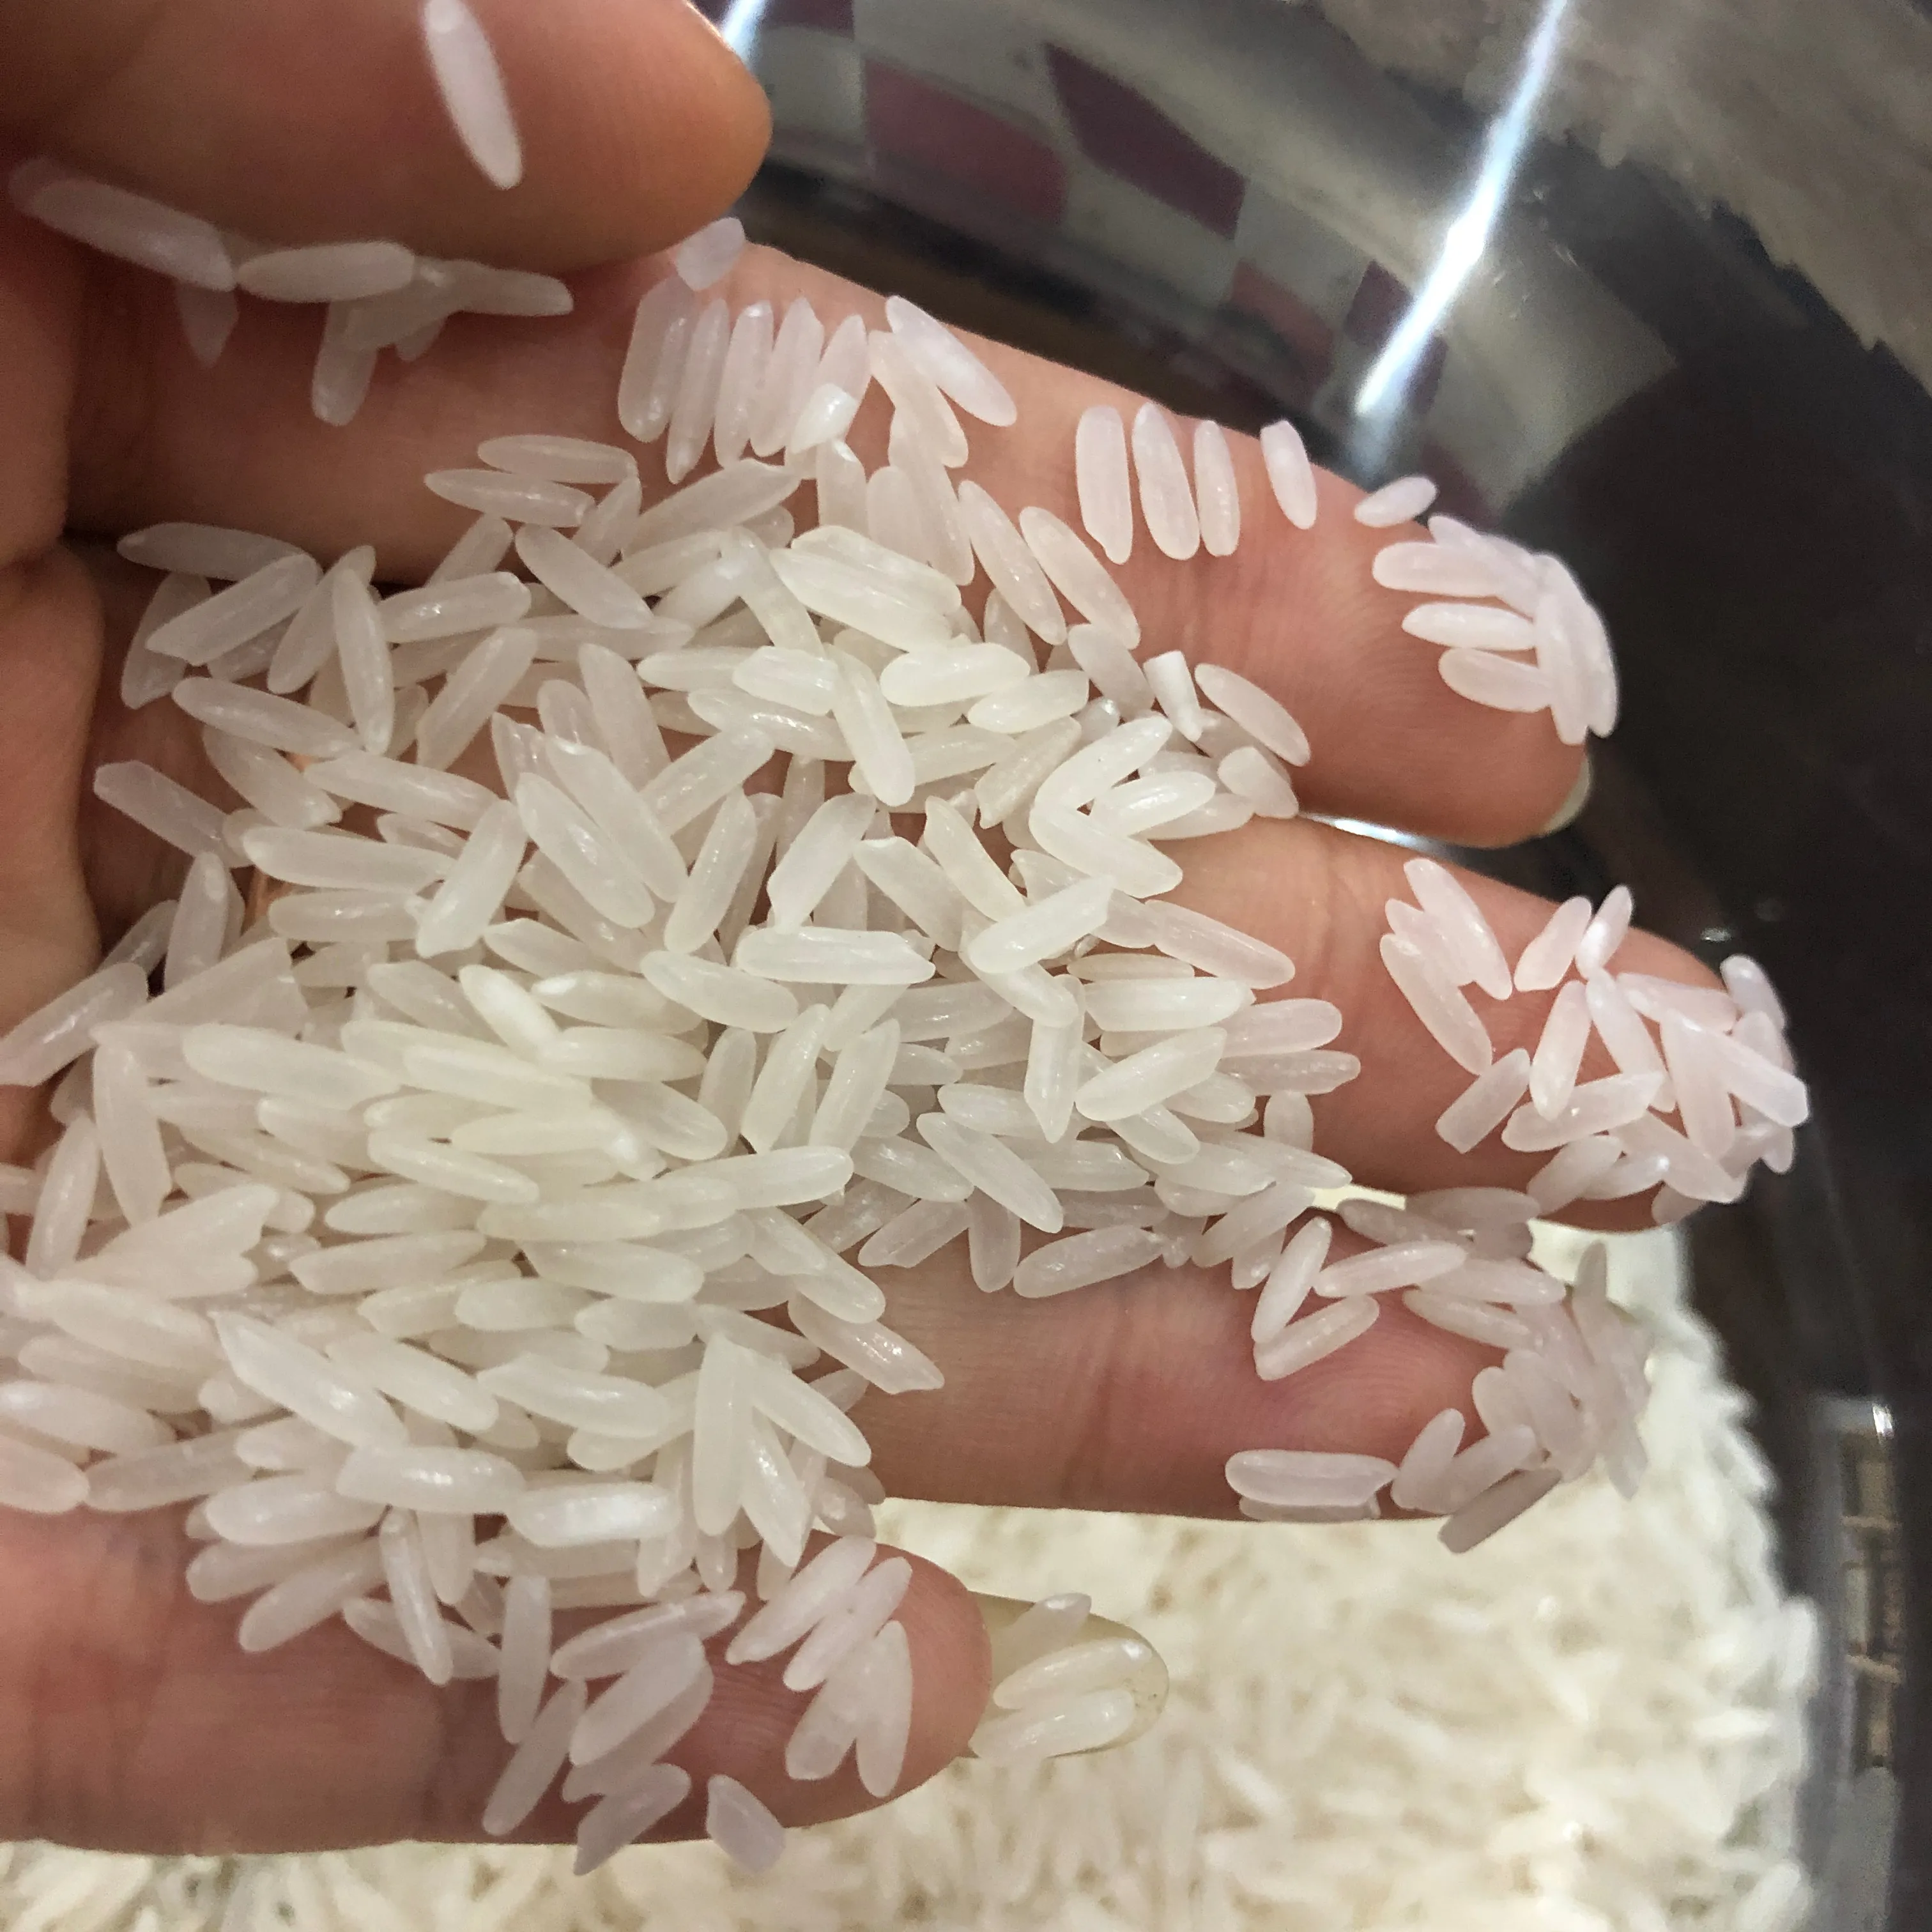 أرز ياسمين أفضل سعر من فييت نام من الأرز المصنع + 84765149122